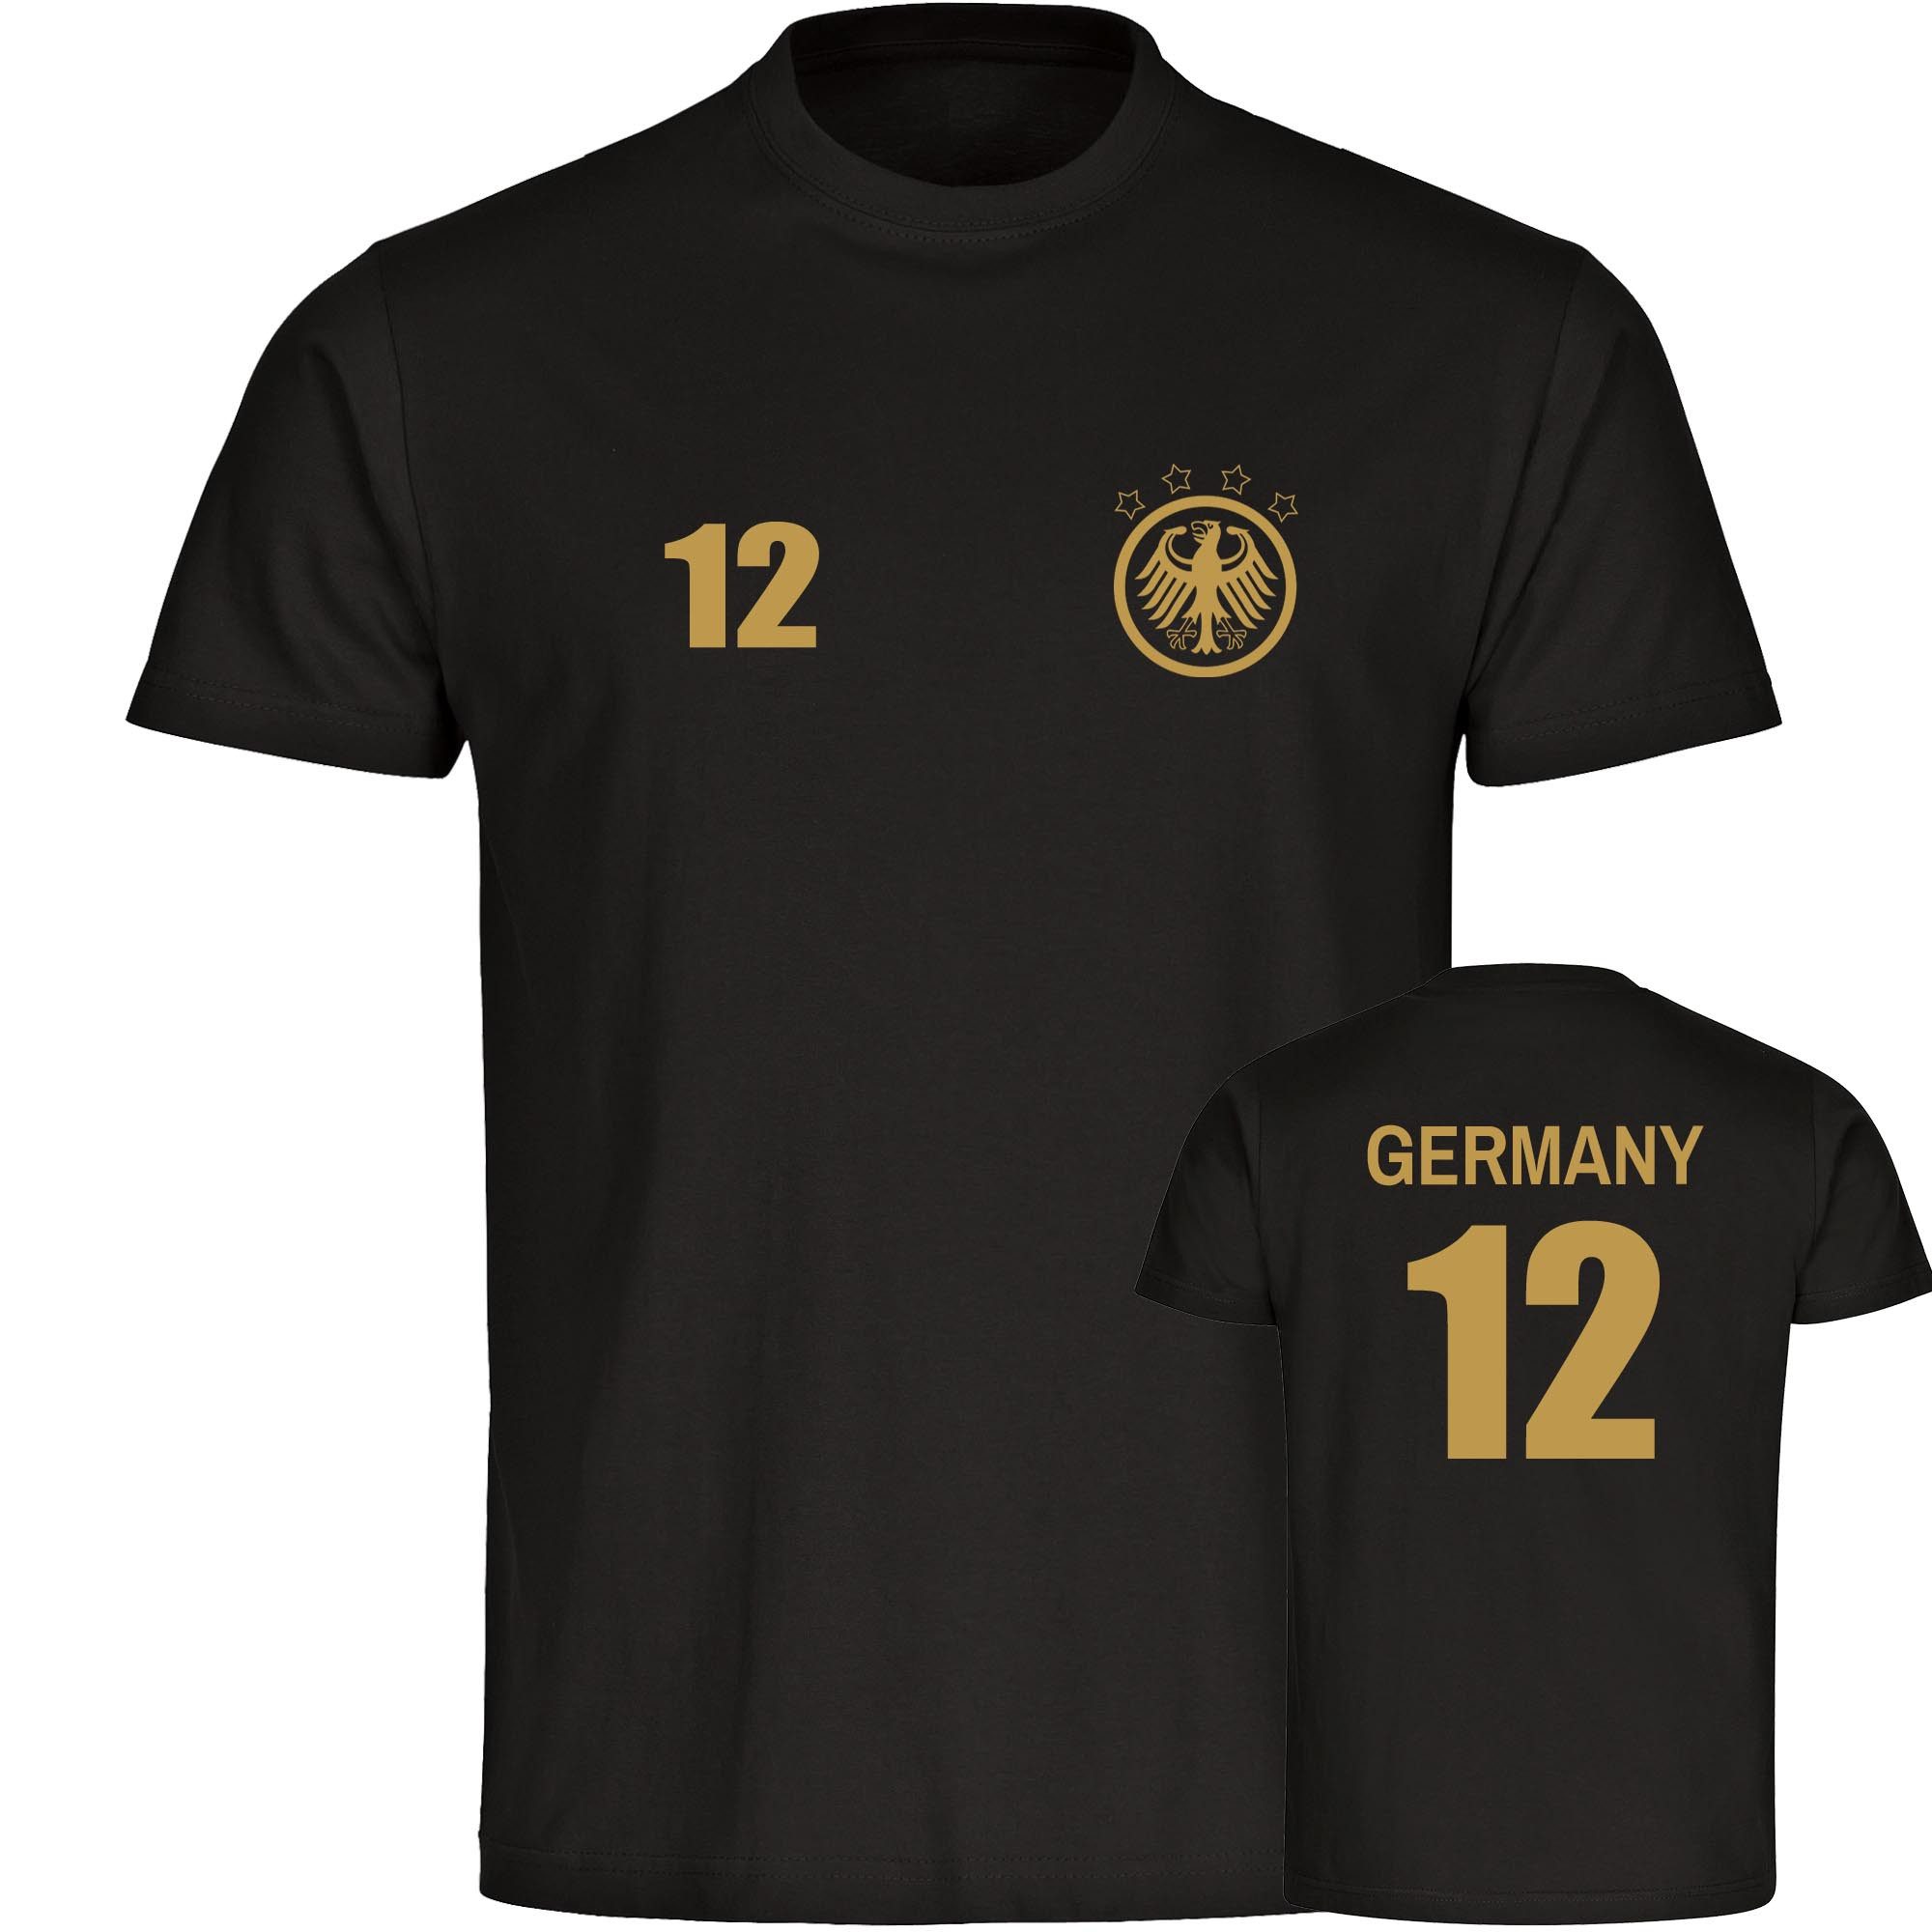 multifanshop T-Shirt Herren Germany - Adler Retro Trikot 12 Gold - Männer